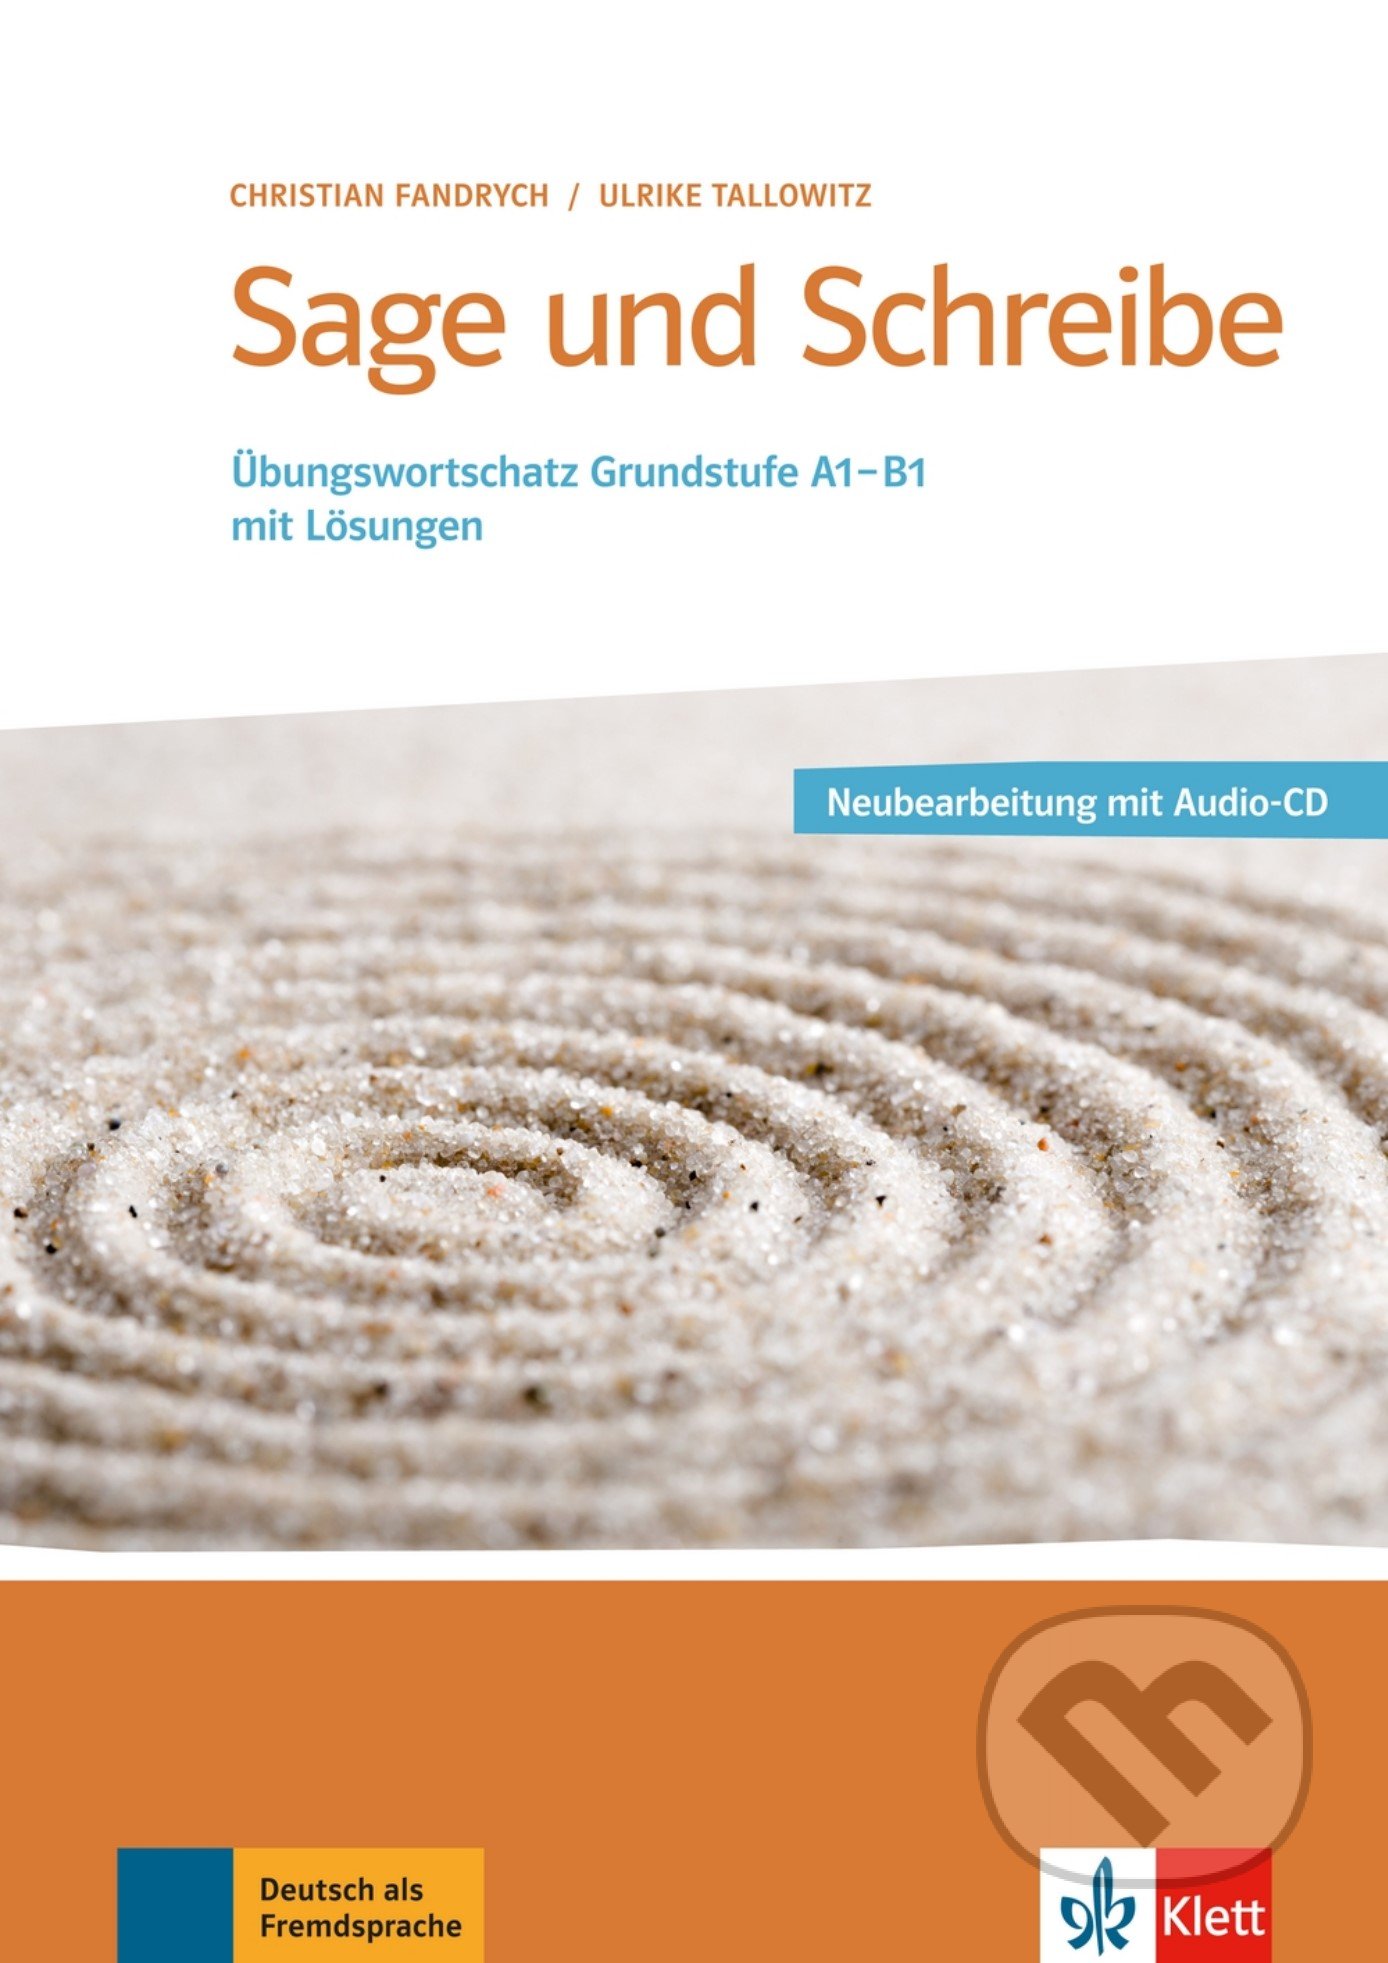 Sage und Schreibe - Neubearbeitung Übungswortschatz A1-B1, Klett, 2016